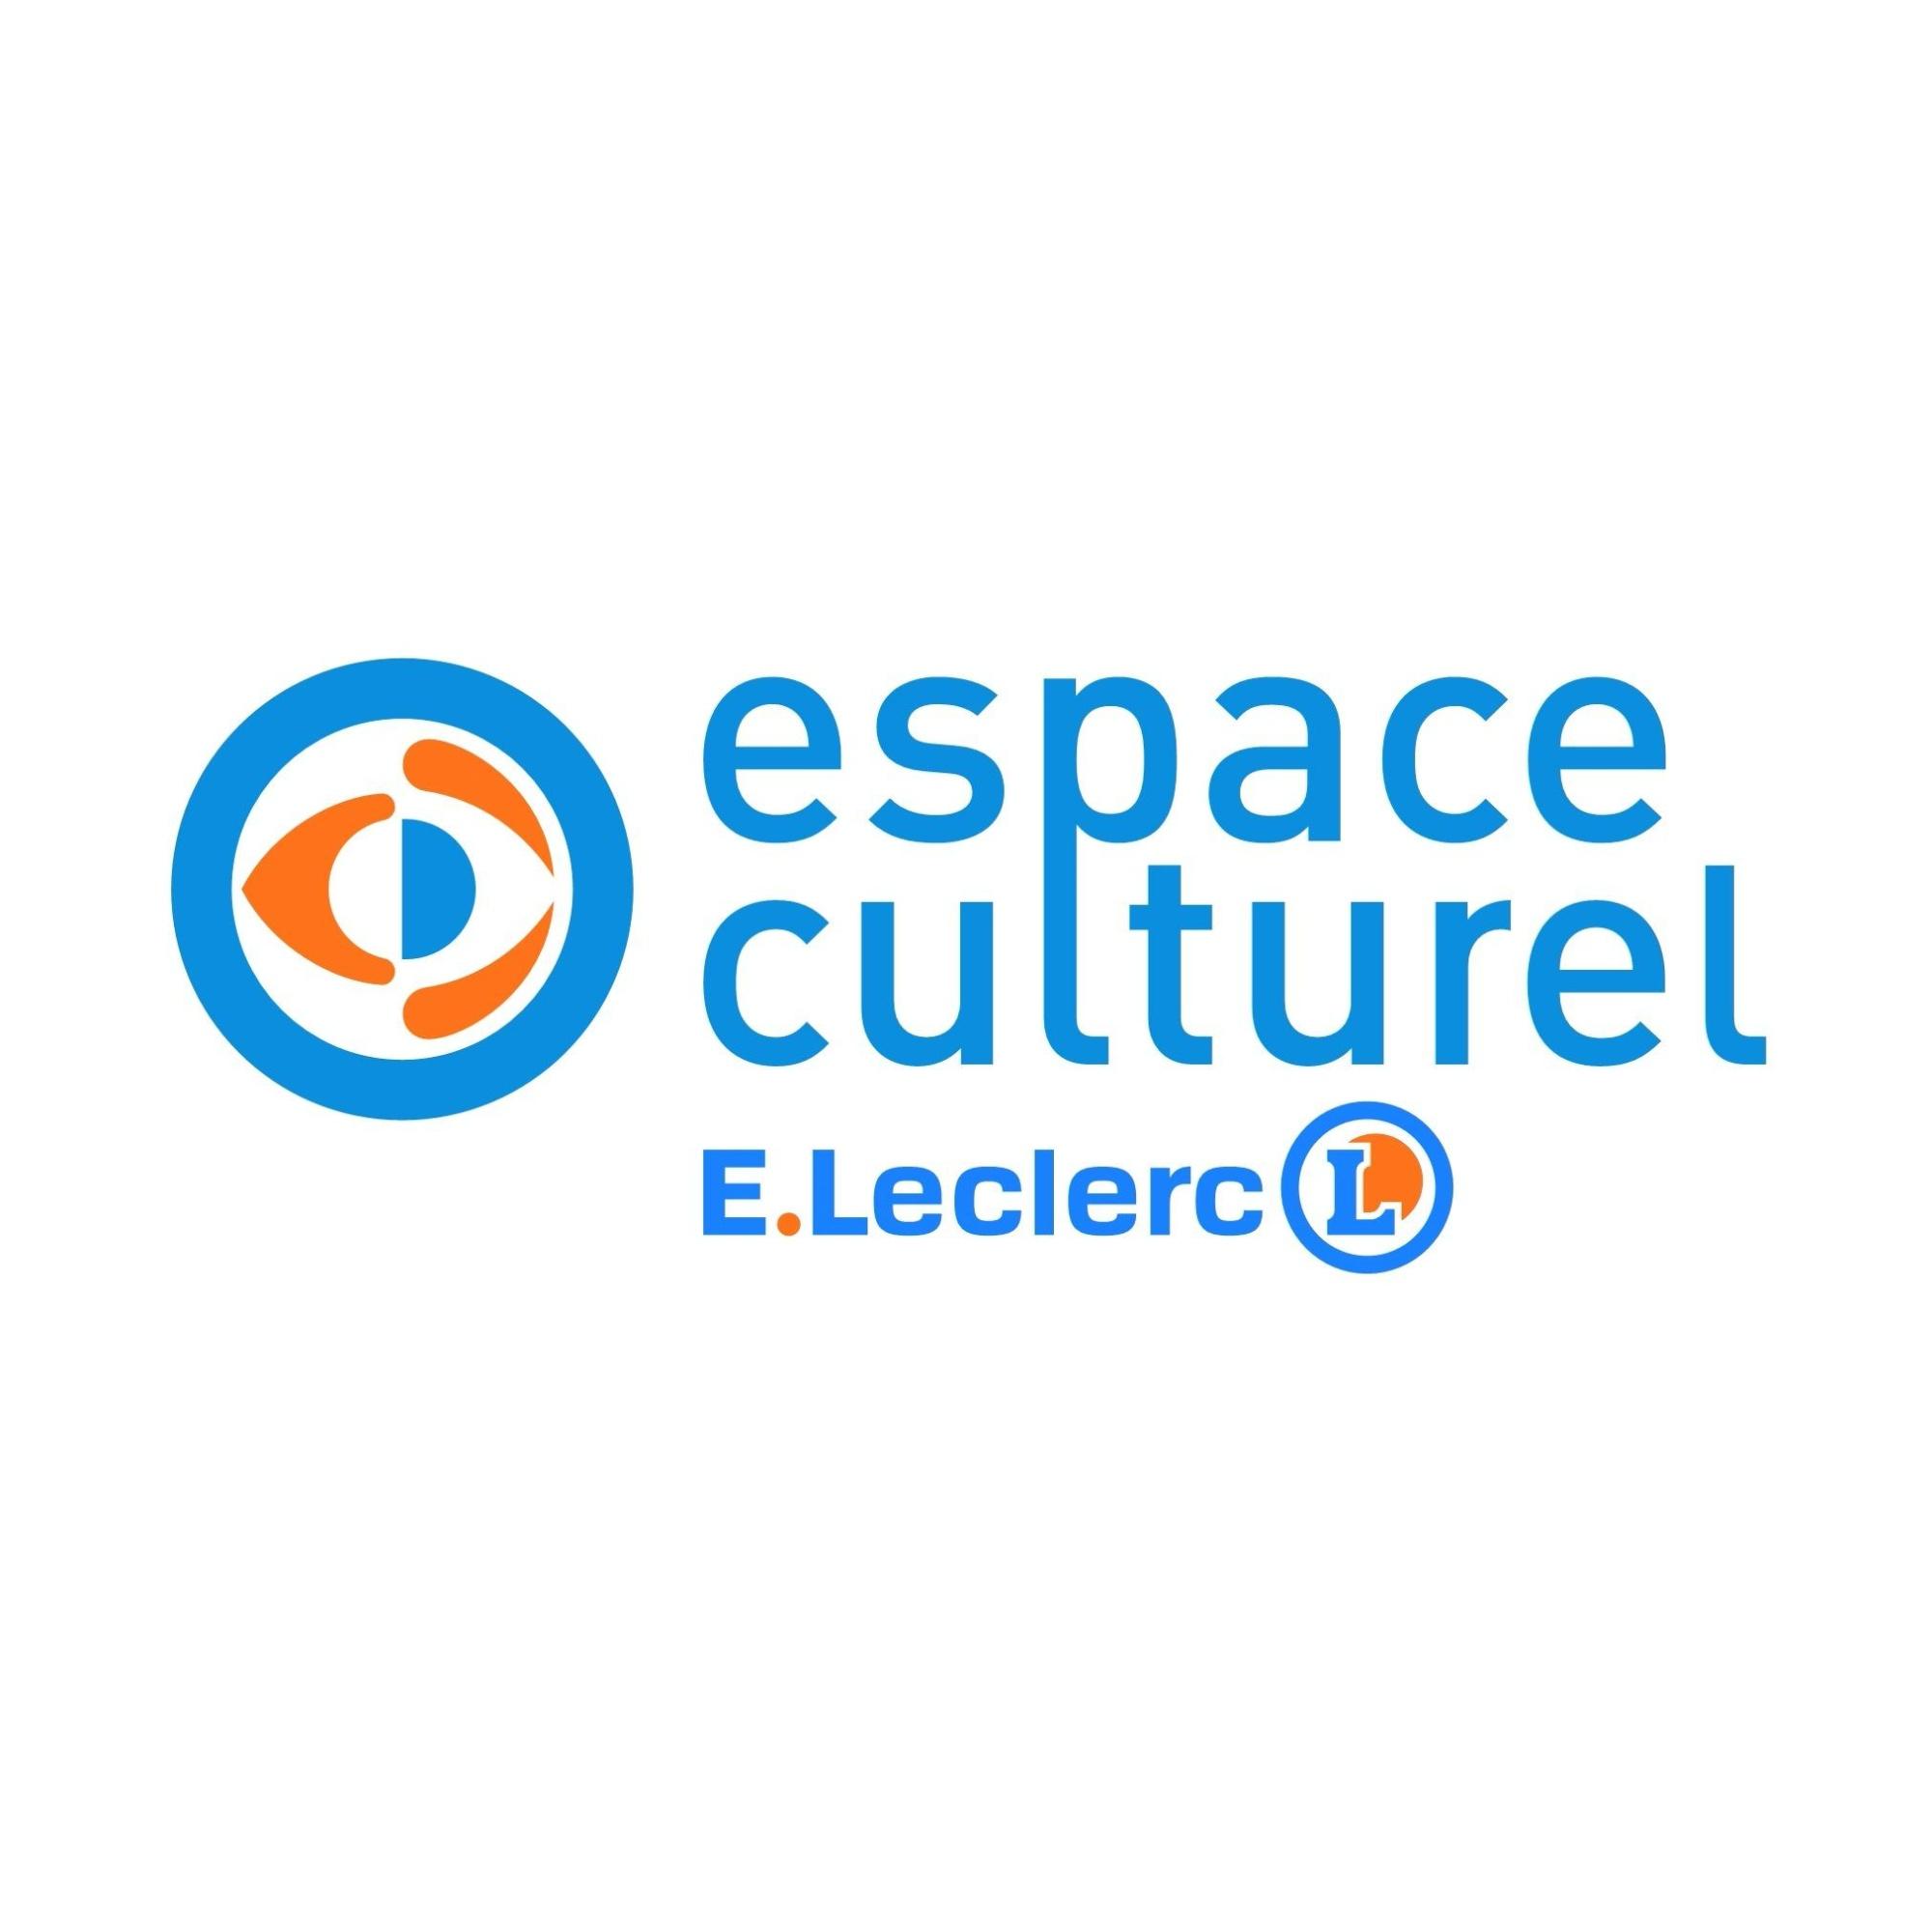 E.leclerc Espace Culturel Lannion